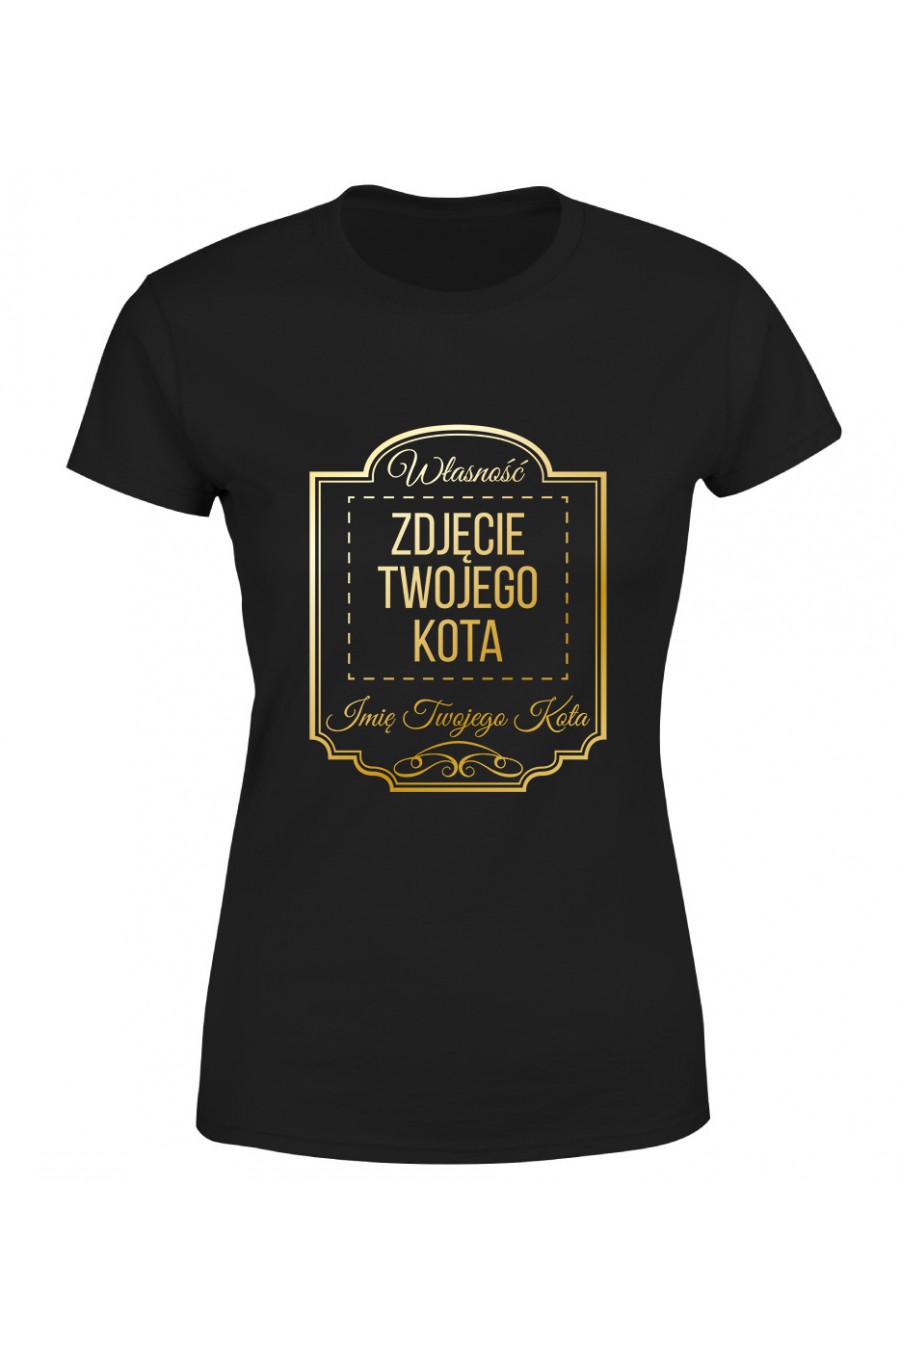 Koszulka Damska Własność Twojego Kota Premium